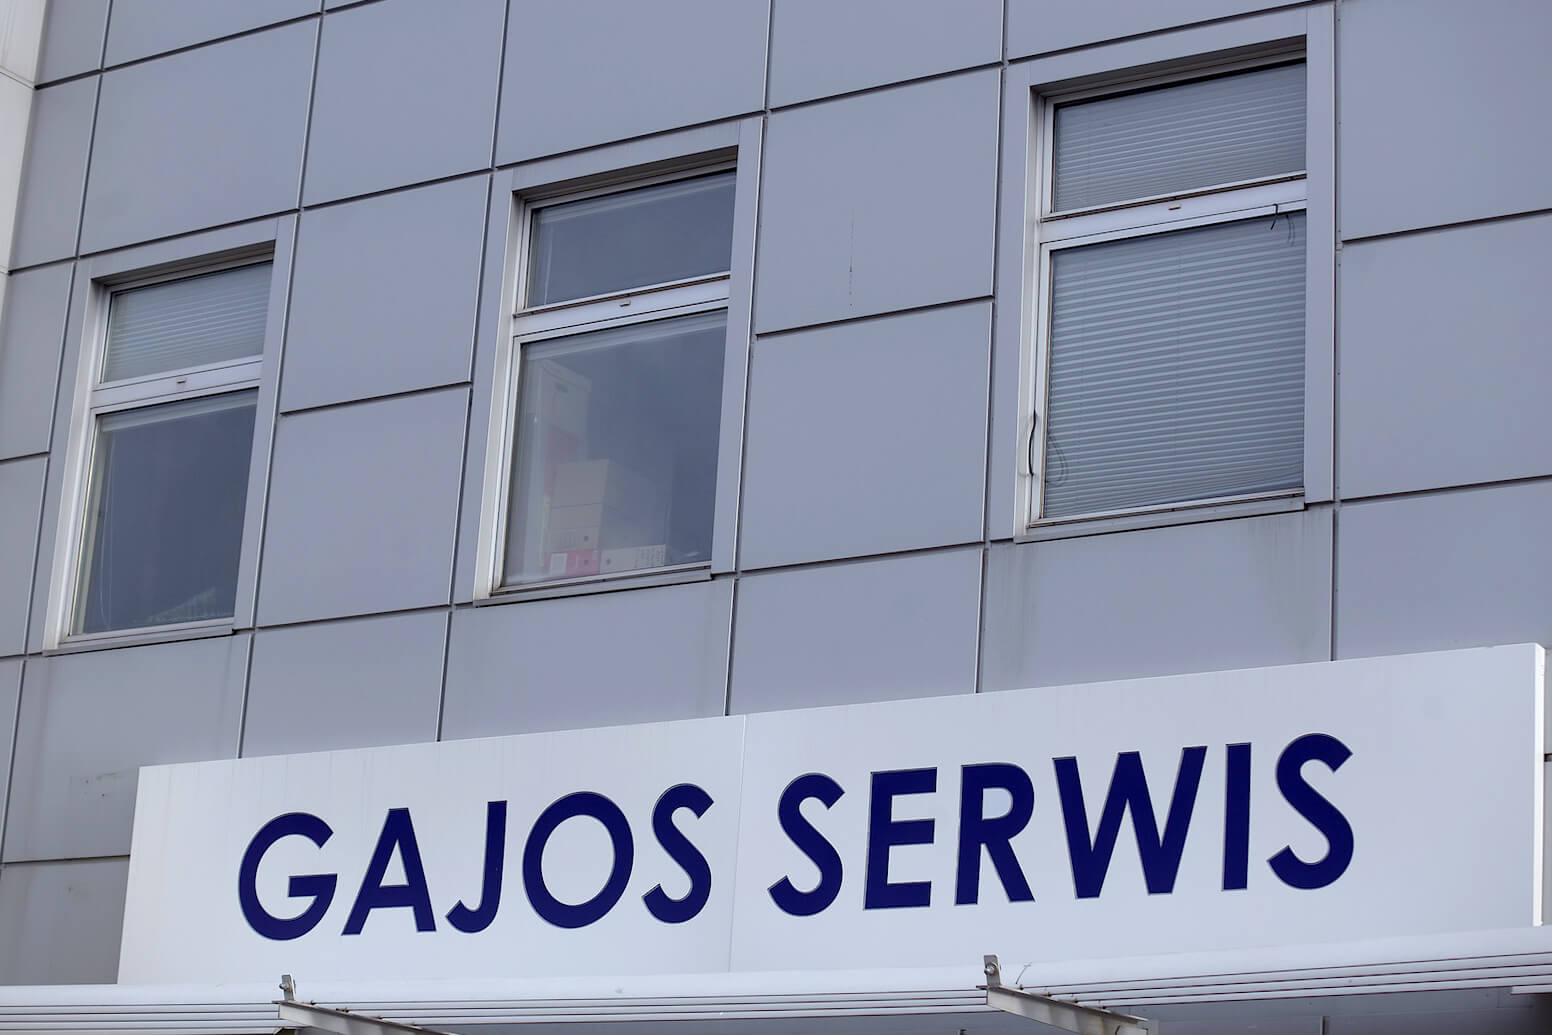 Gajos service - Gajos Serwis - caisson en dibond, panneau d'entreprise au-dessus de l'entrée